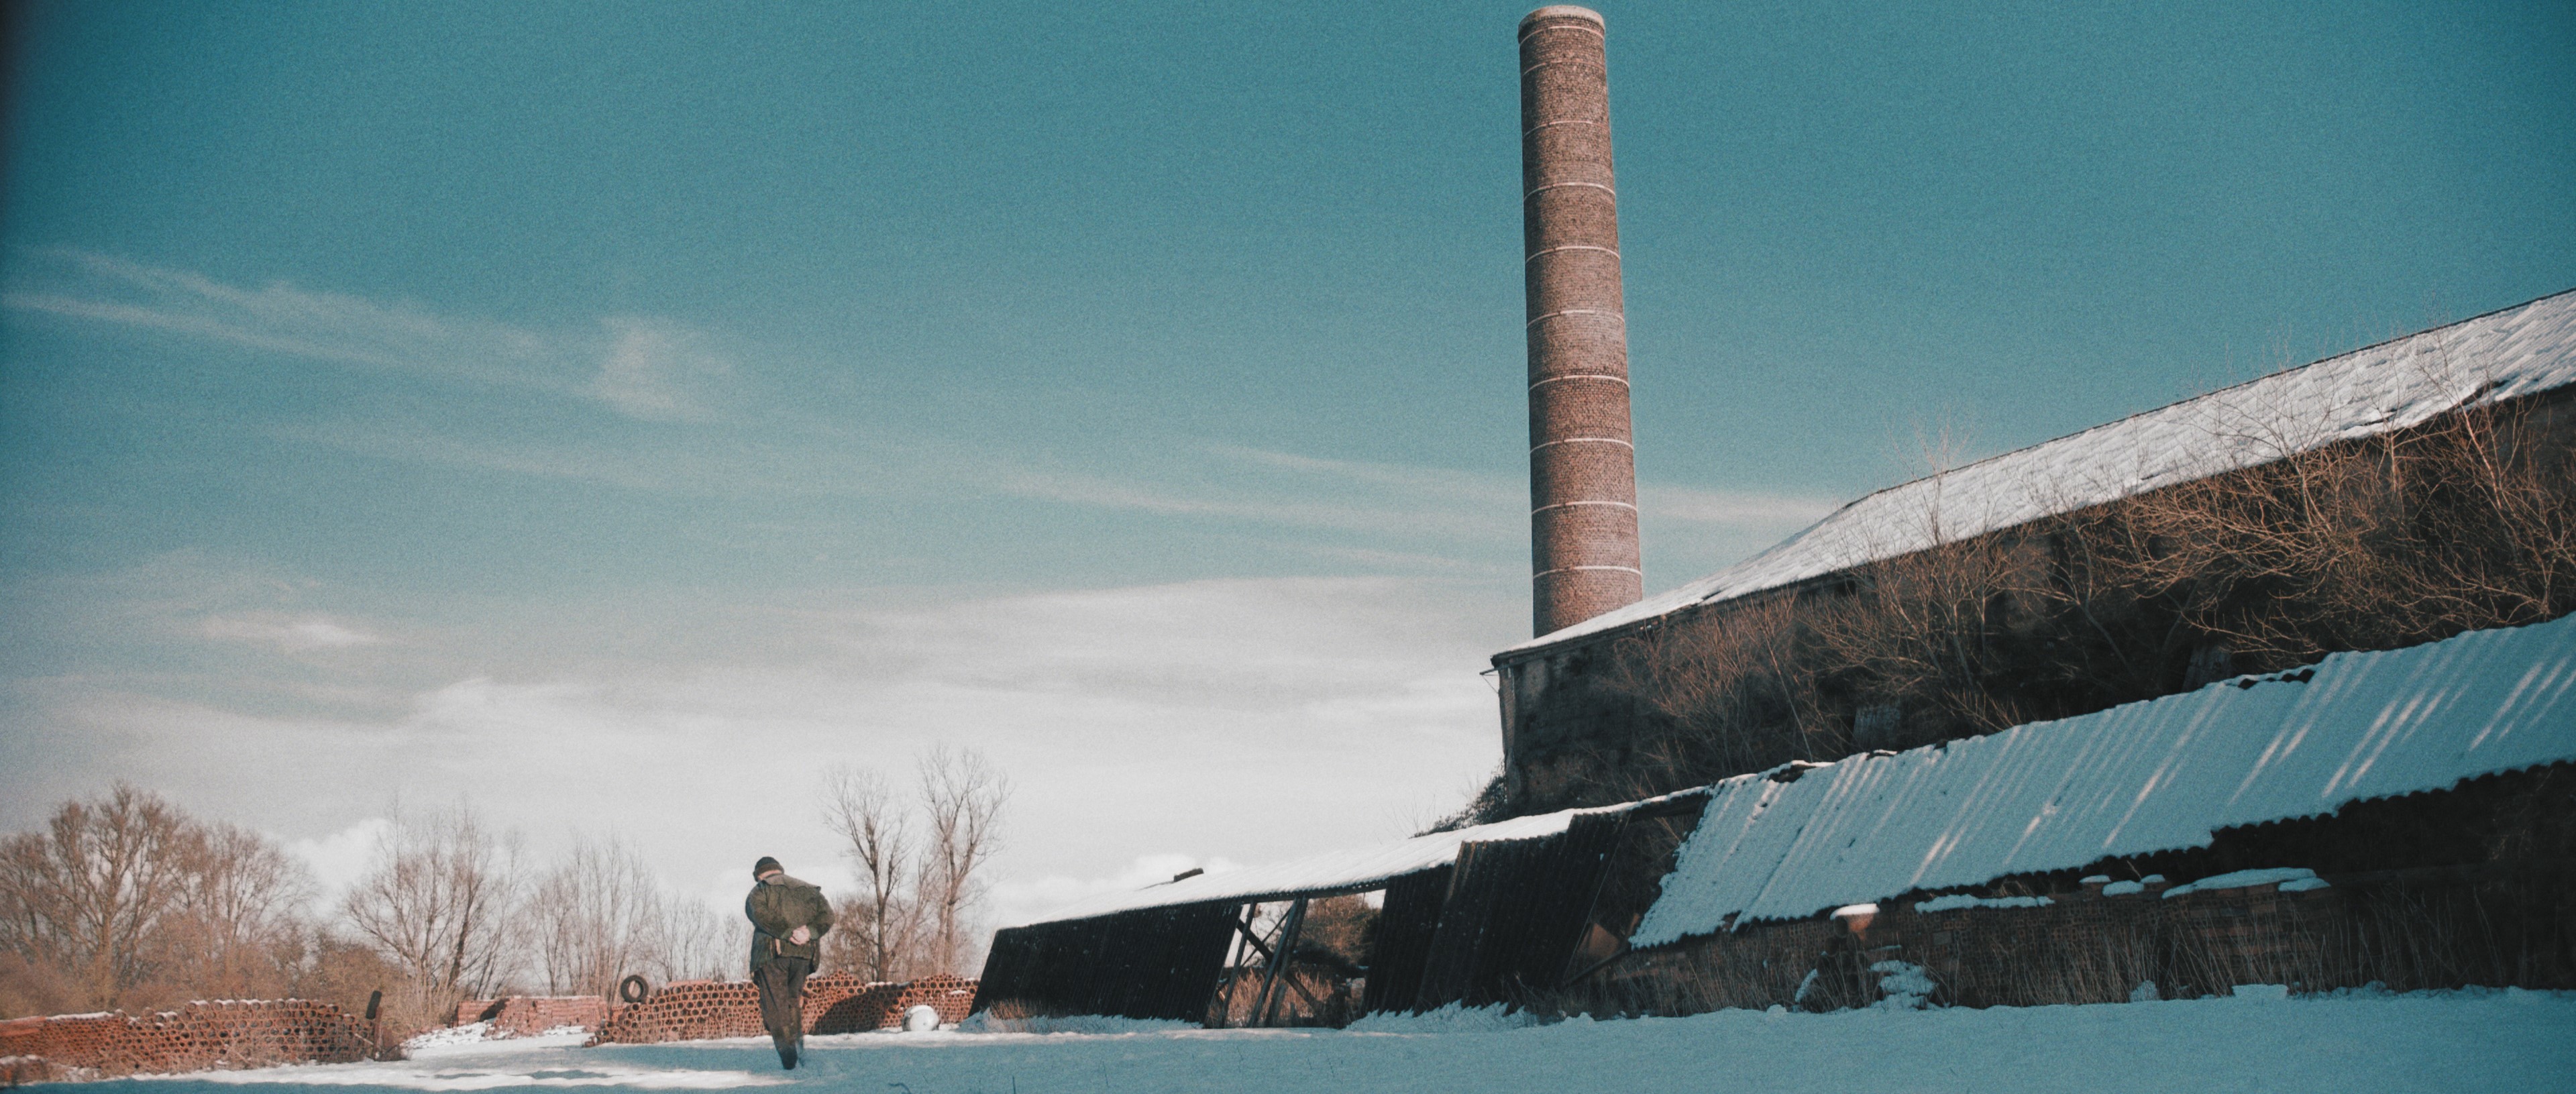 Steenbakkerij Dumoulin te Wijtschate in sneeuwlandschap